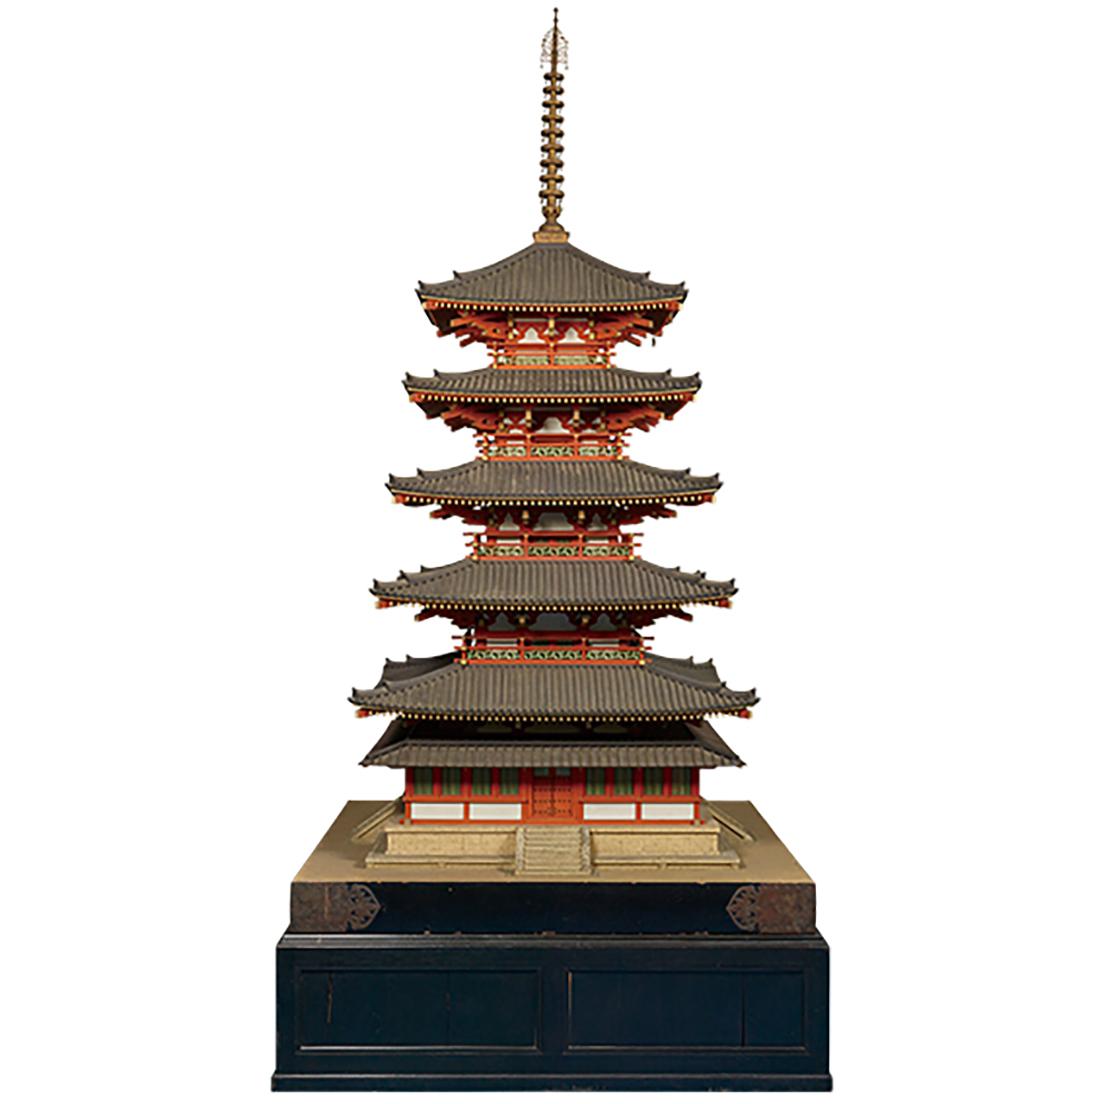 法隆寺五重塔1/10模型 1932年 東京国立博物館蔵